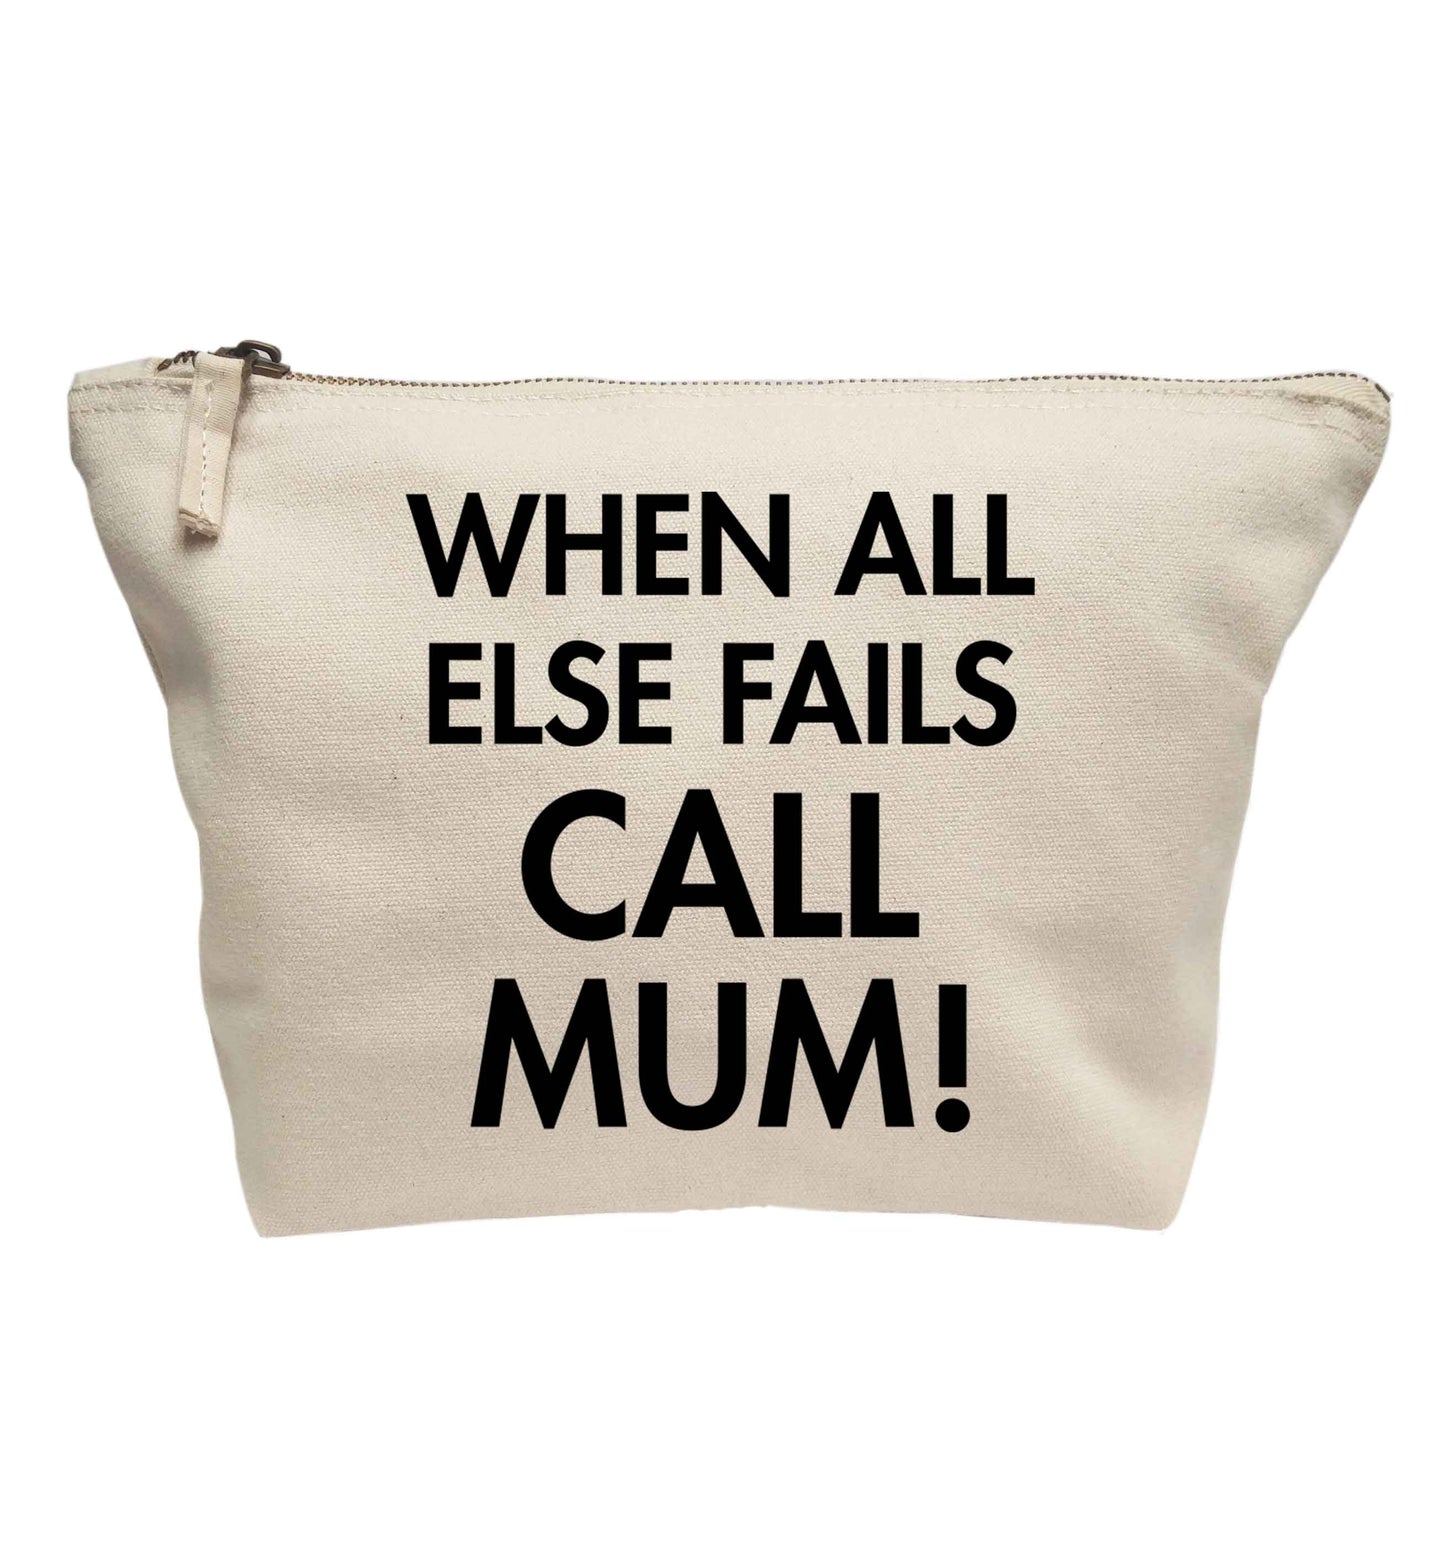 When all else fails call mum! | Makeup / wash bag